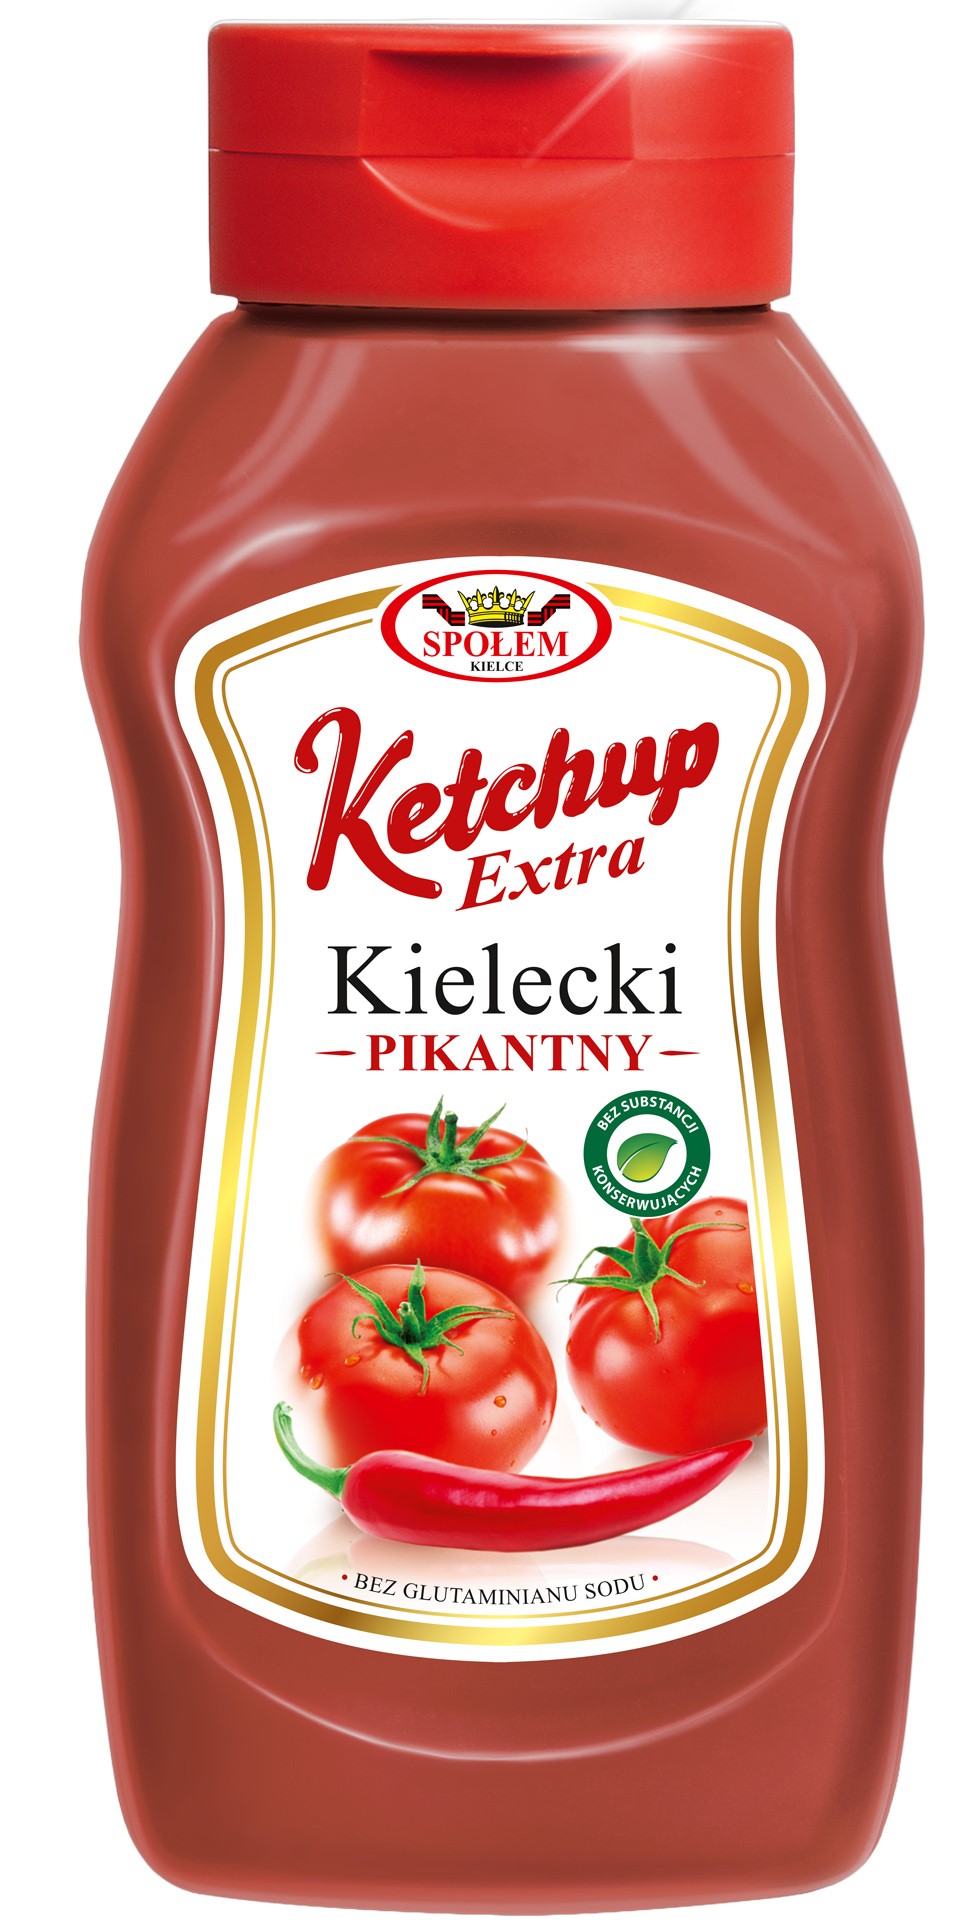 Ketchupowy zawrót głowy